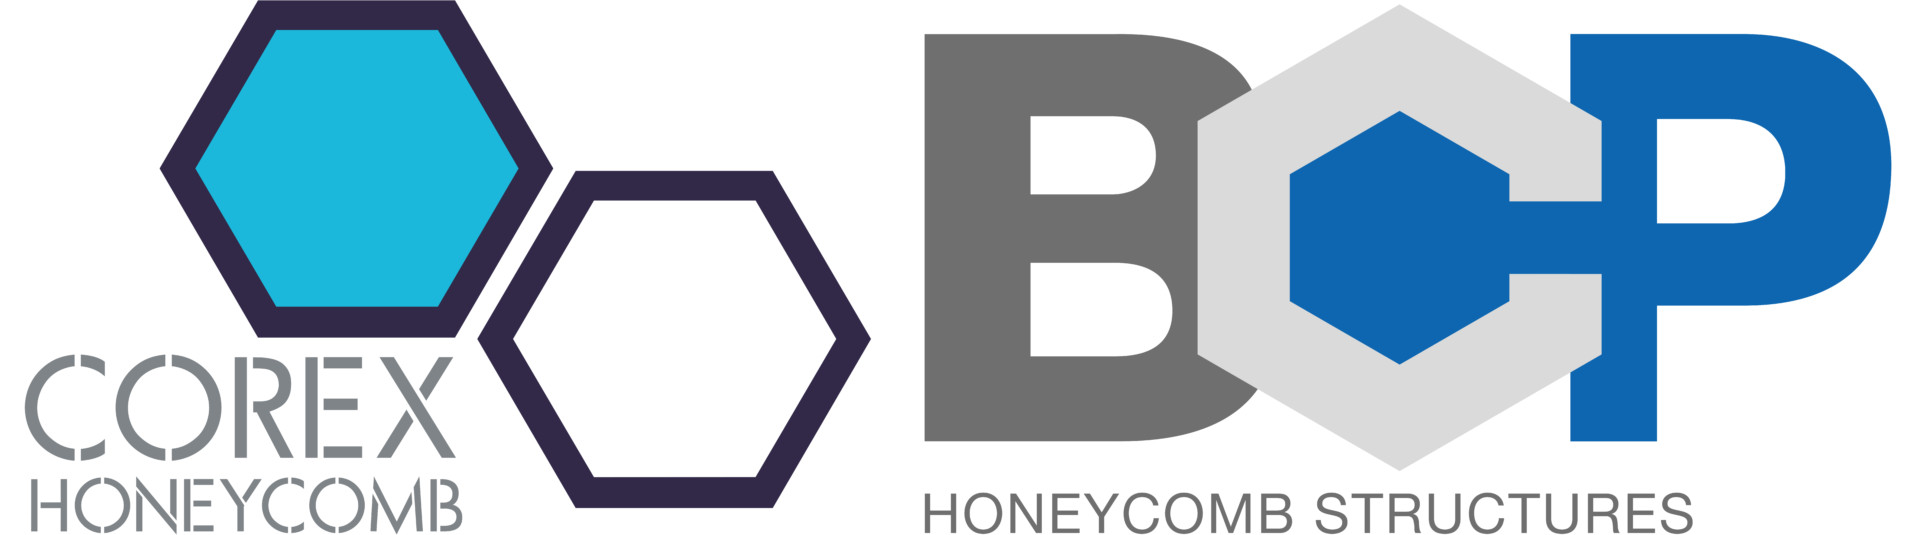 COREX HONEYCOMB logo CMYK pdf